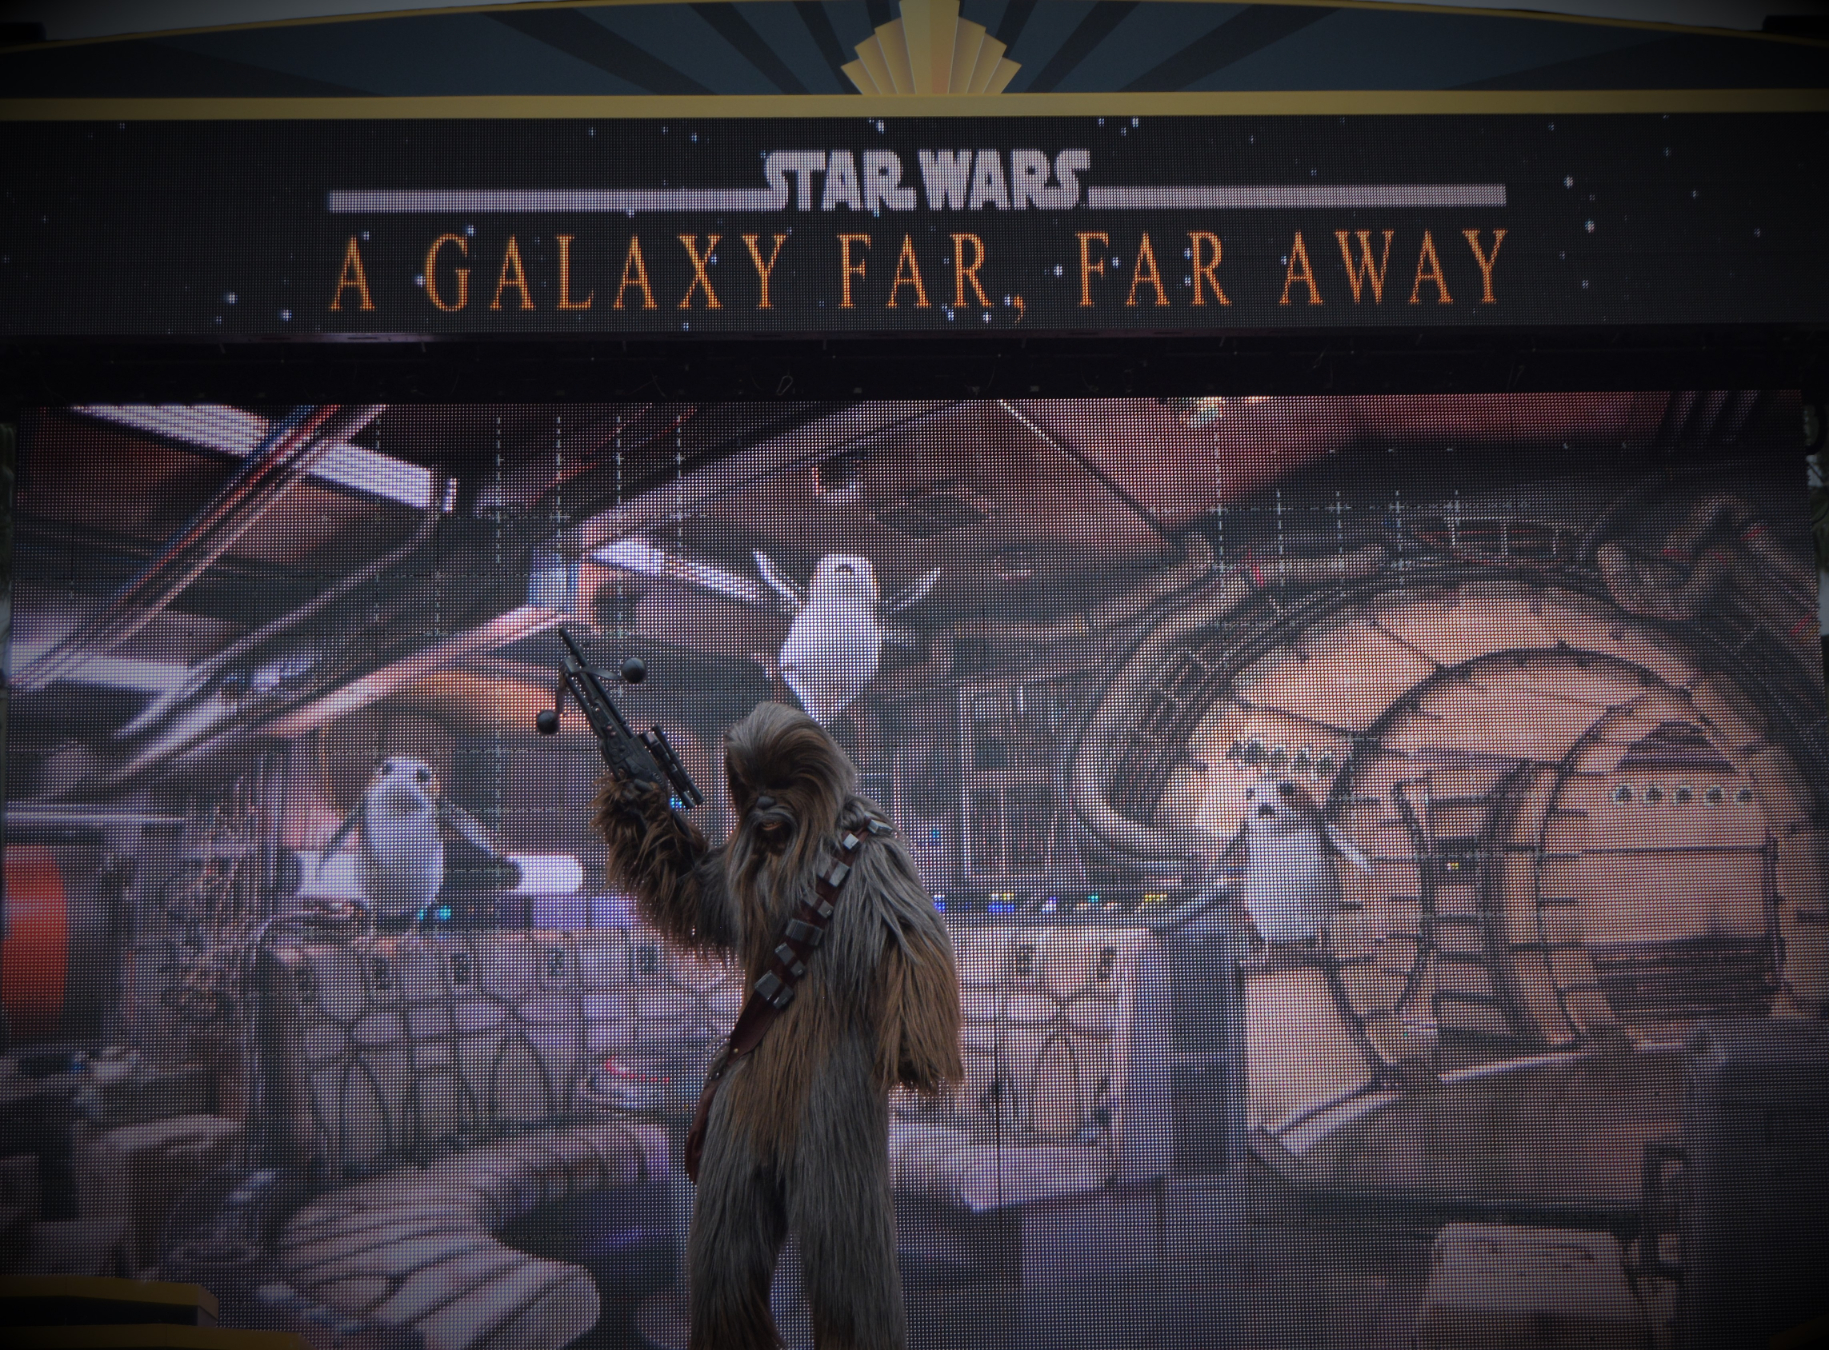 Star Wars a galaxy far far away from Walt Disney World Hollywood Studios 2019